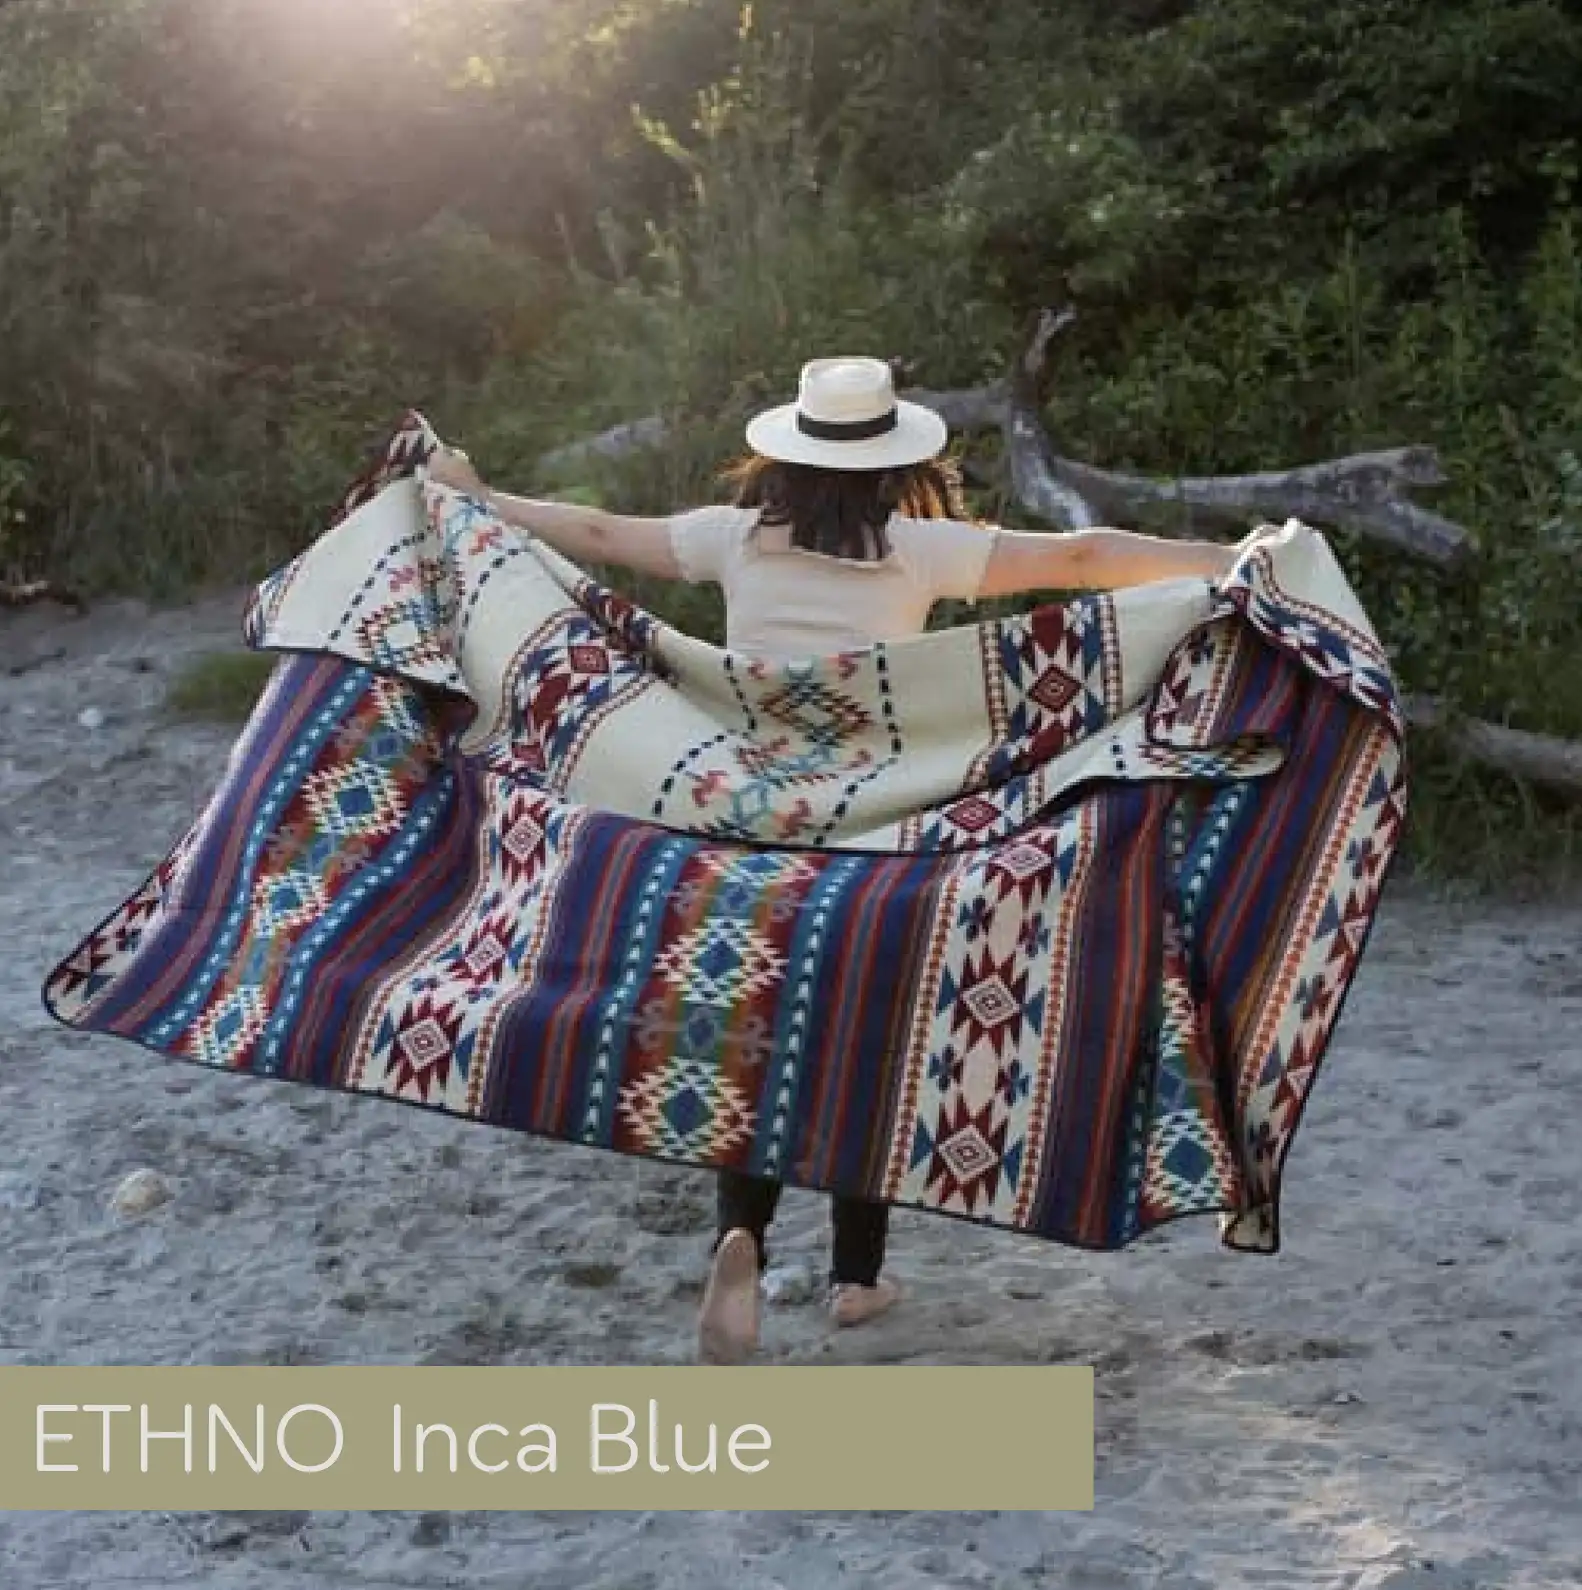 Große, weiche Decke für Vanlife & Camping im Ethno Style